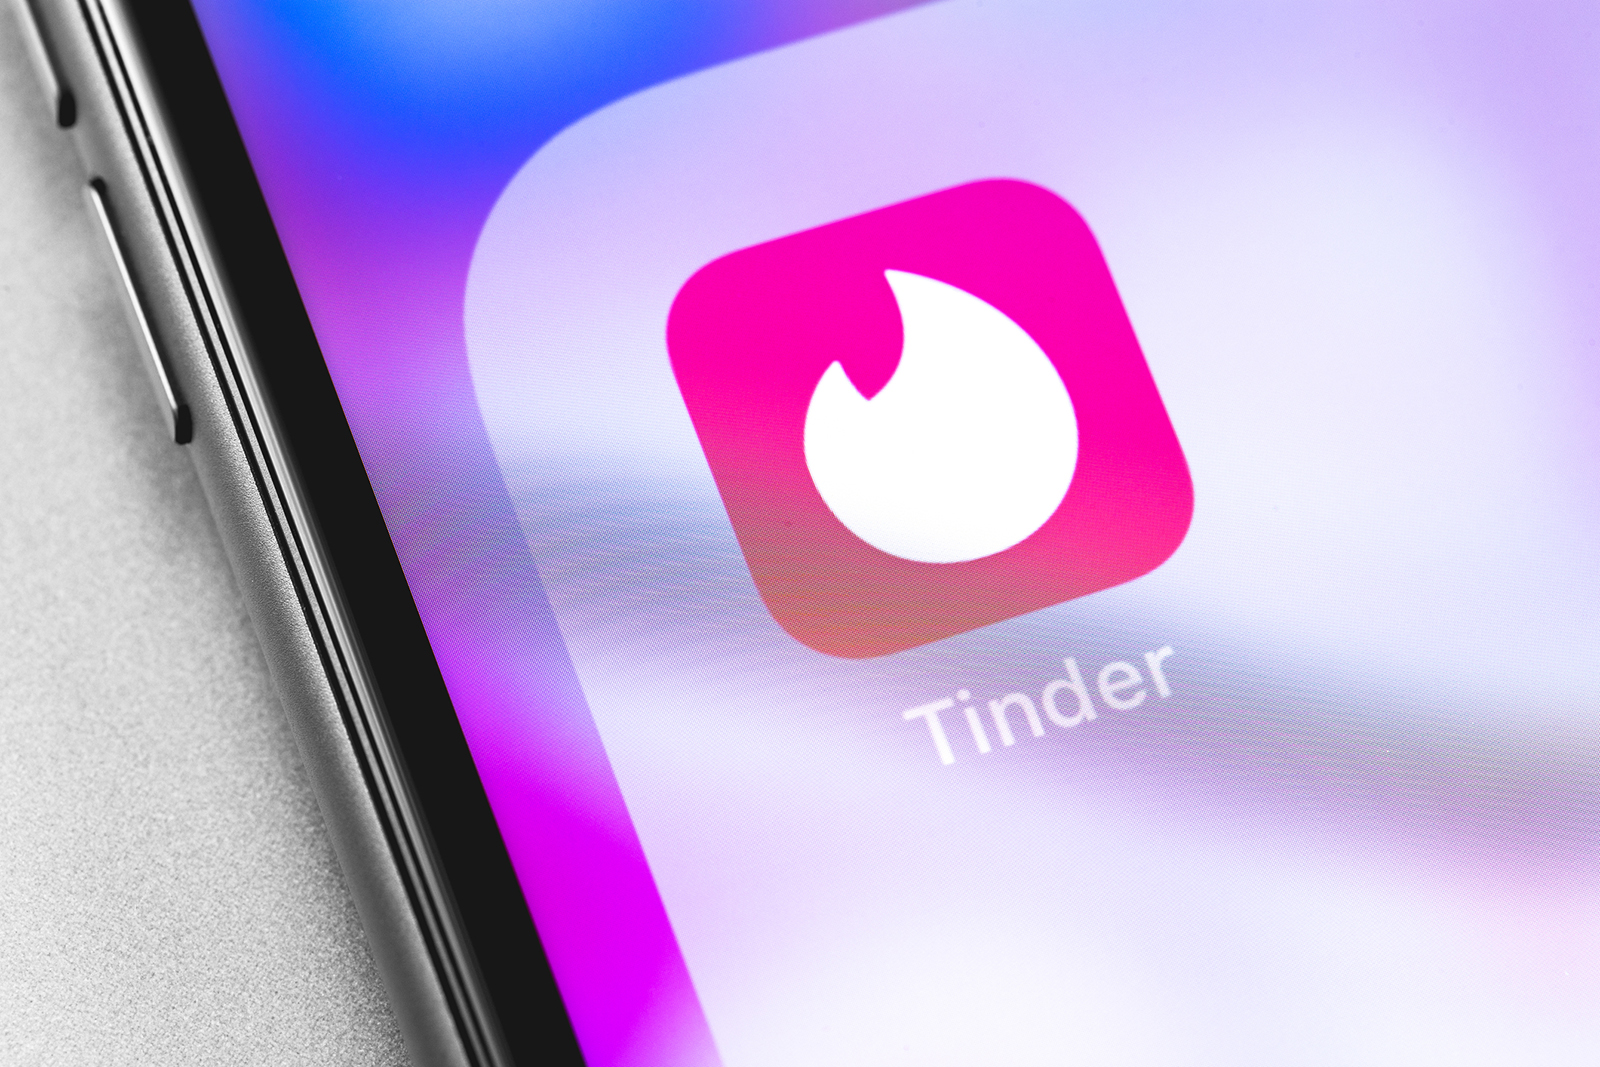 tinder dating app (Dreamstime/TNS)